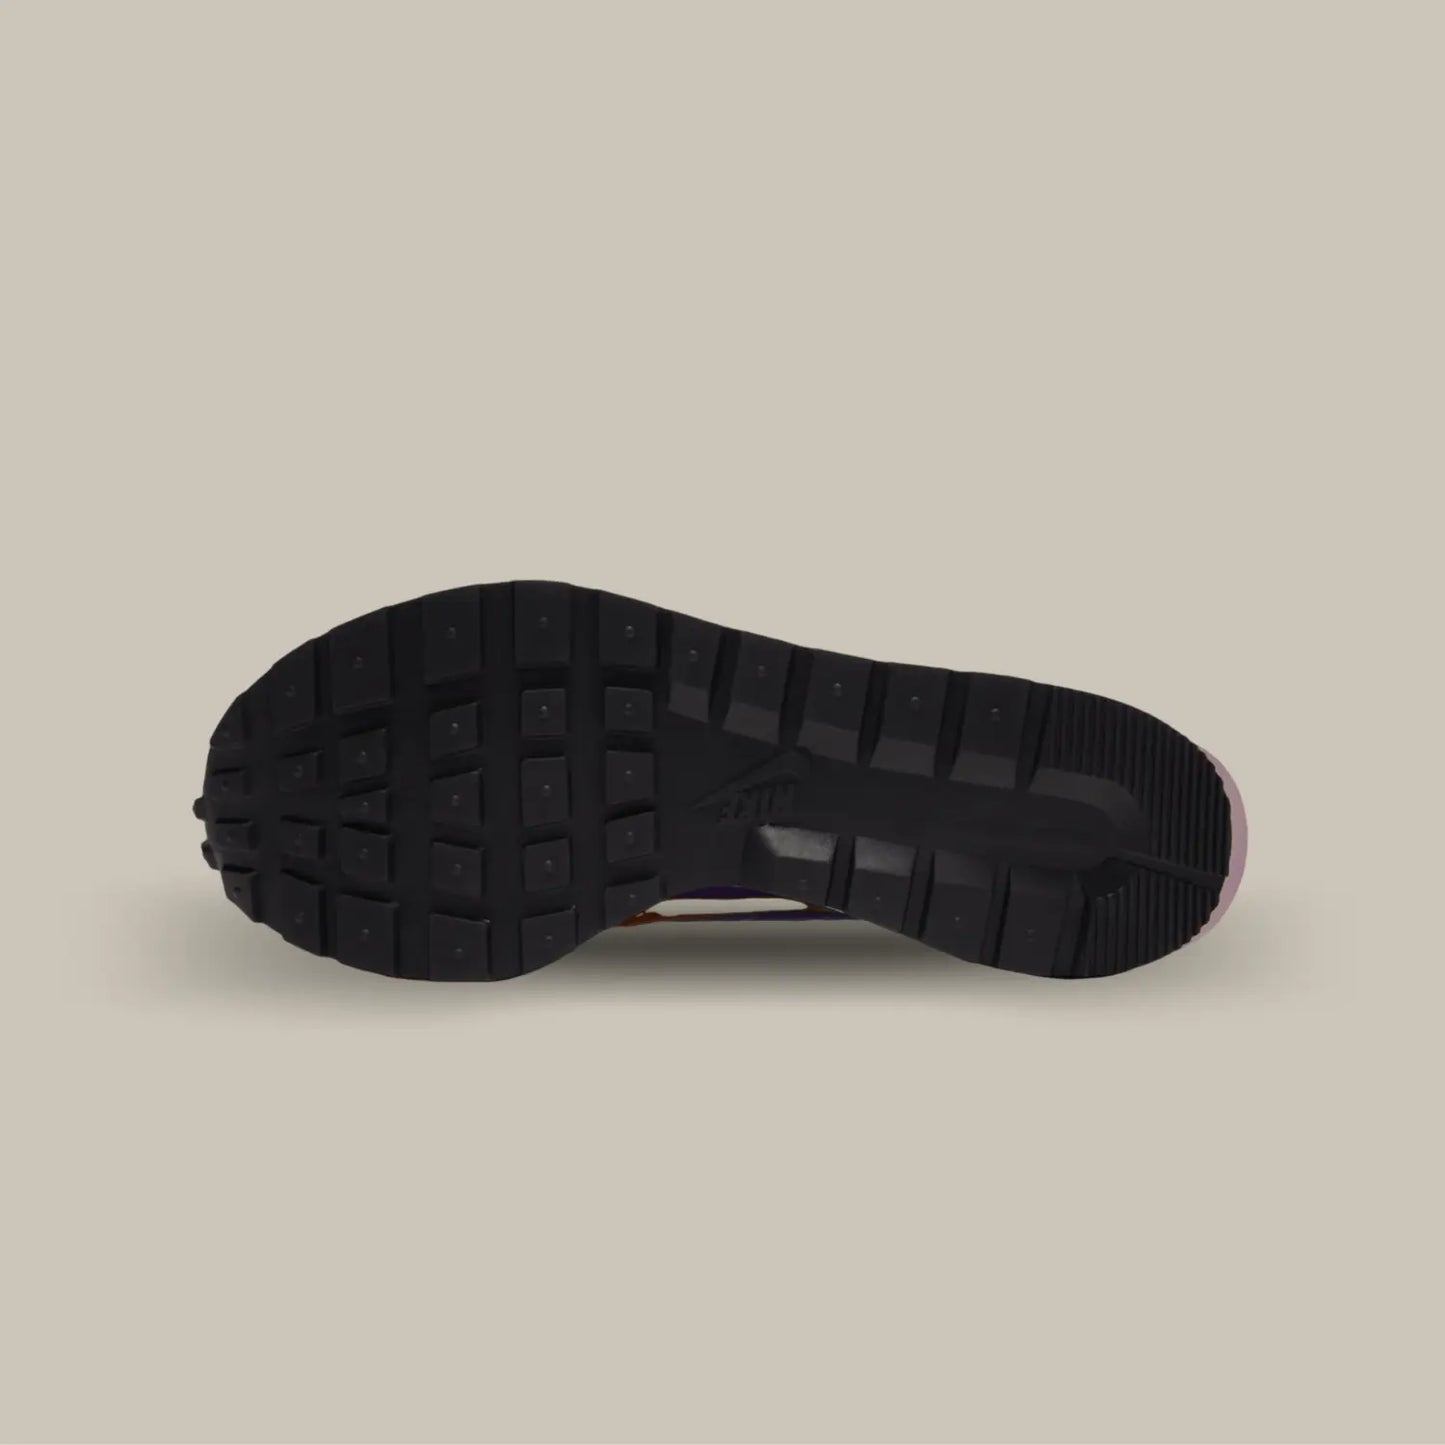 La semelle noir de la Nike Vaporwaffle Sacai Dark Iris